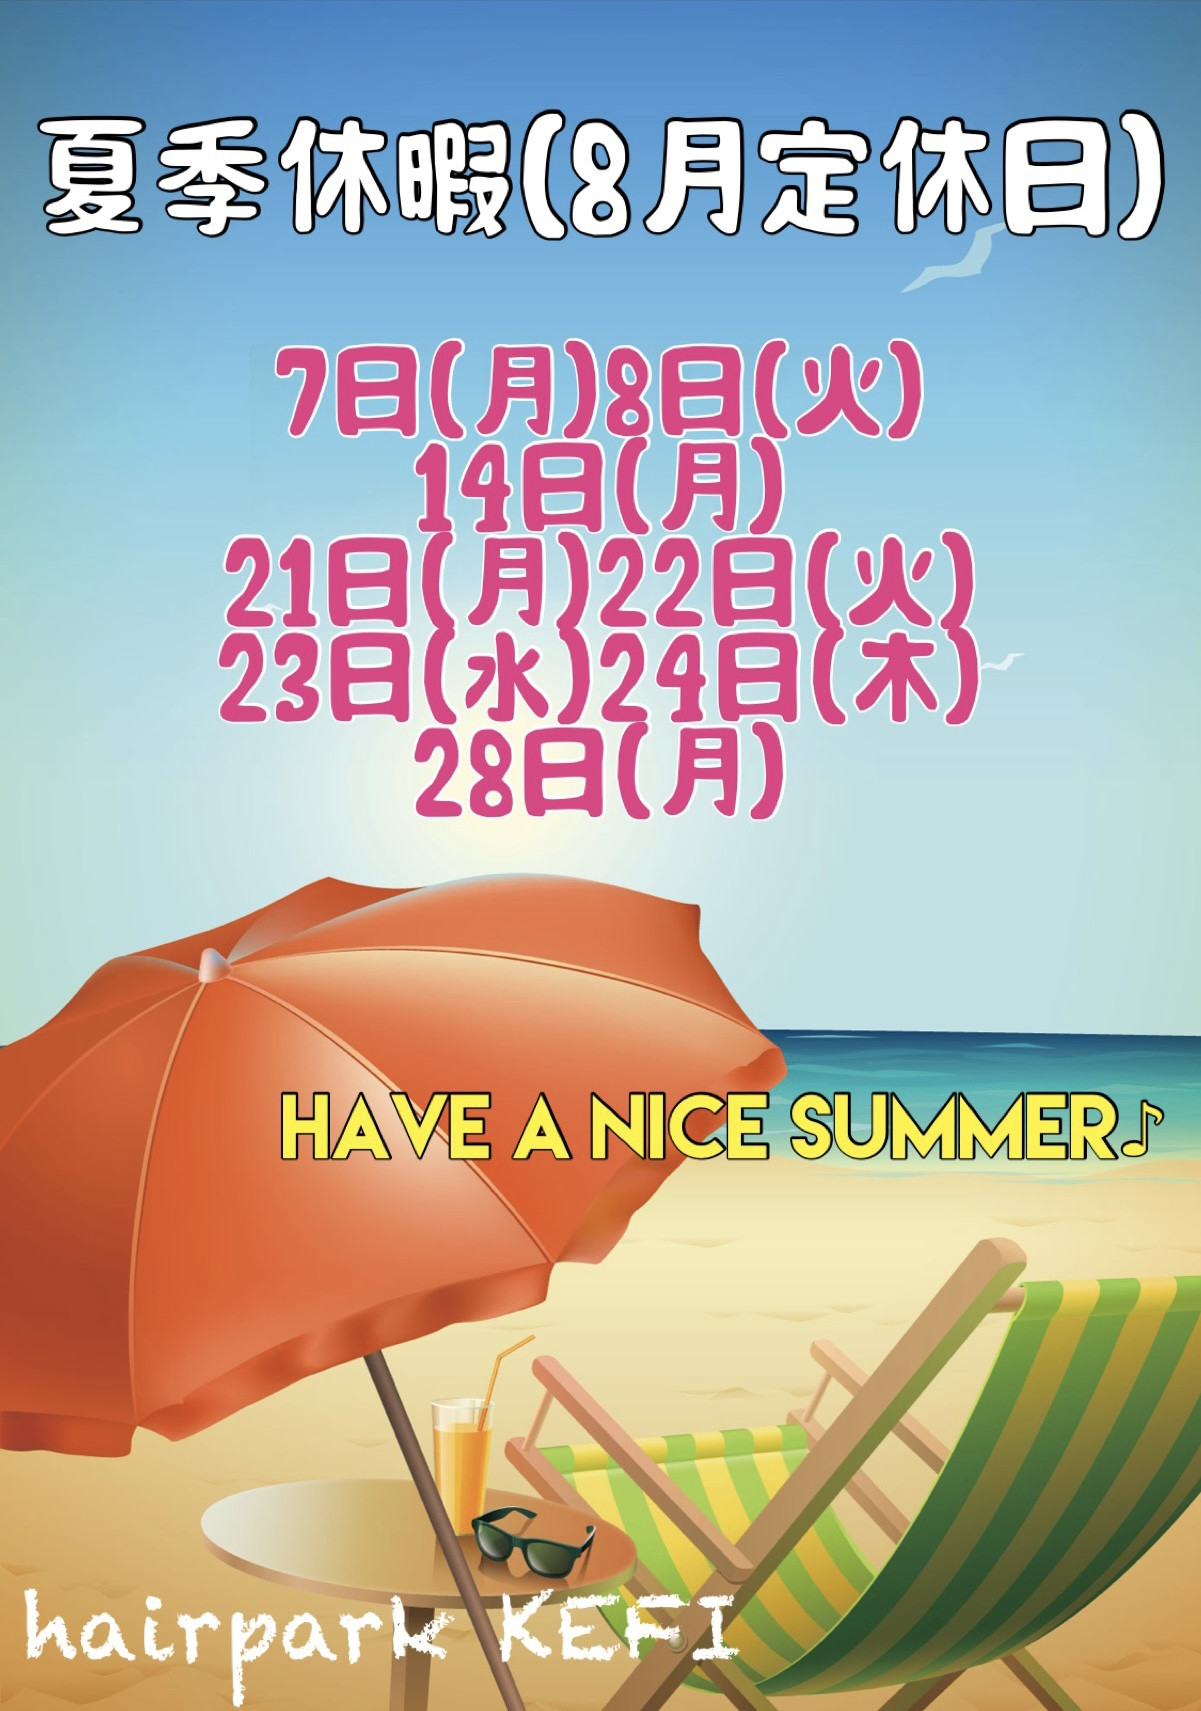 夏季休暇(8月定休日)のお知らせ